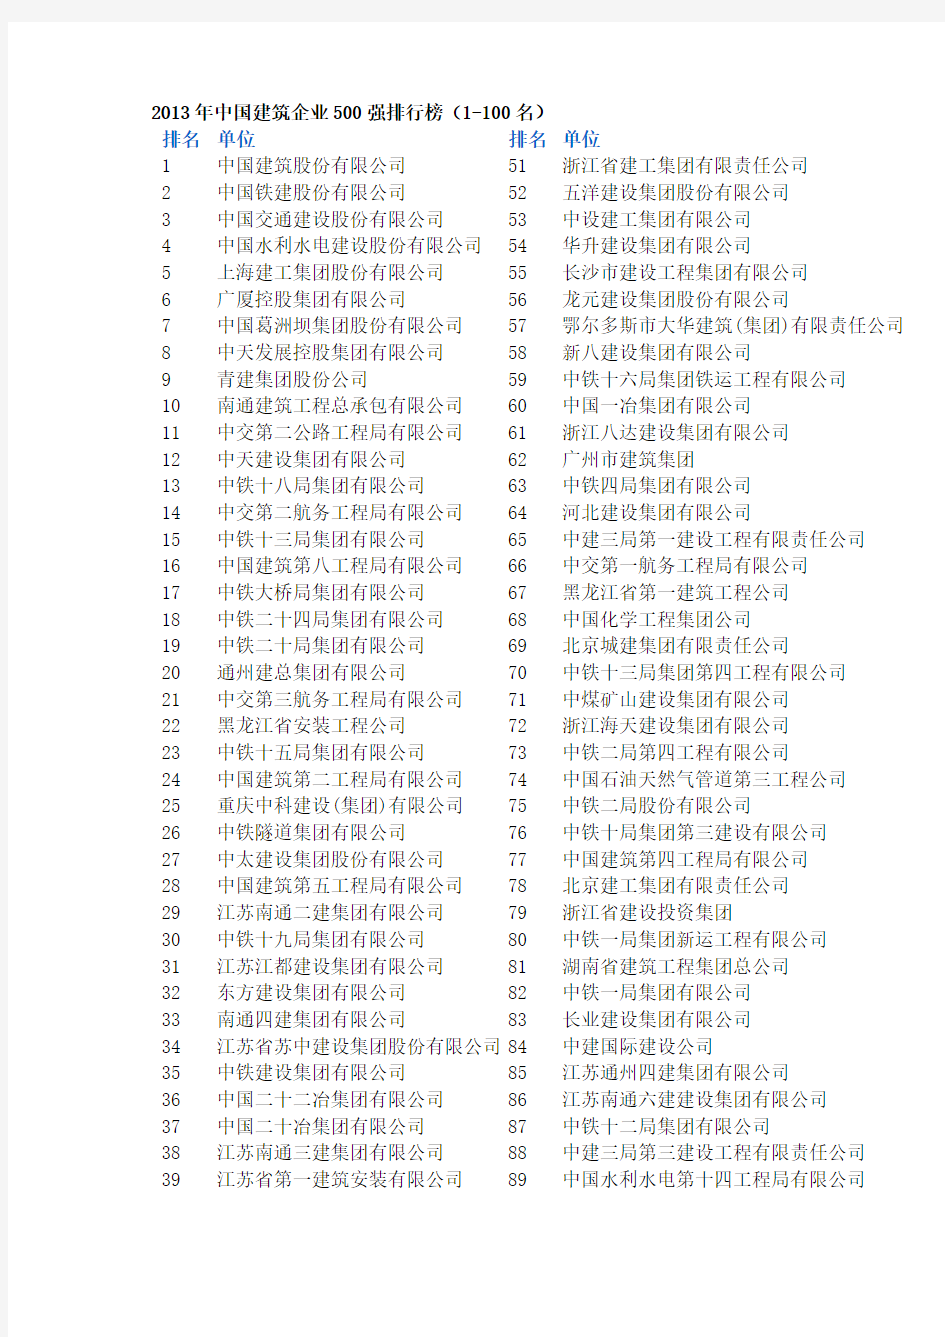 2014年中国建筑企业500强排行榜